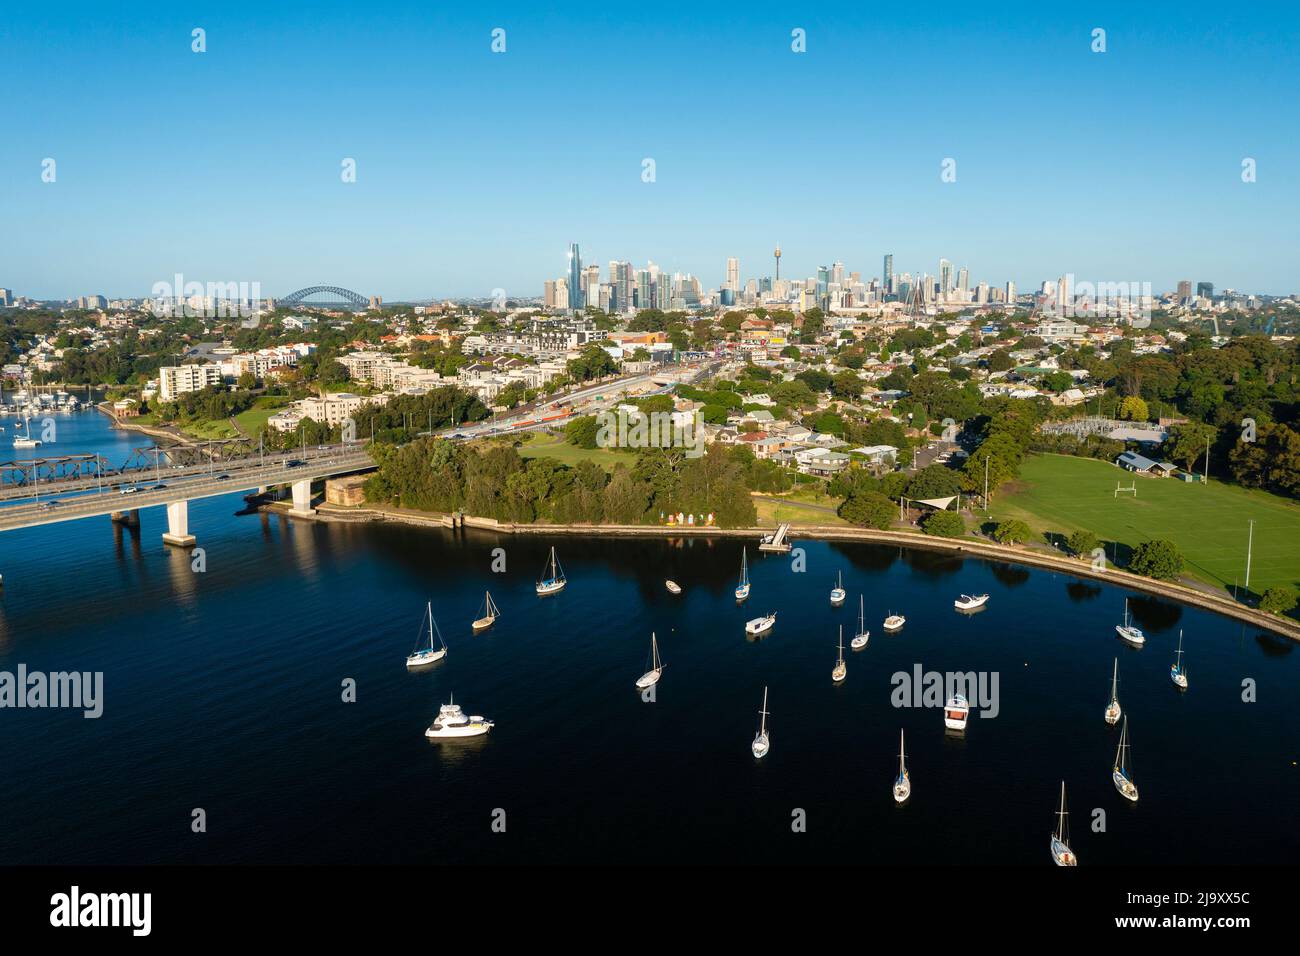 Vista aérea de un suburbio frente al mar cerca del distrito central de negocios de Sydney en Australia Foto de stock